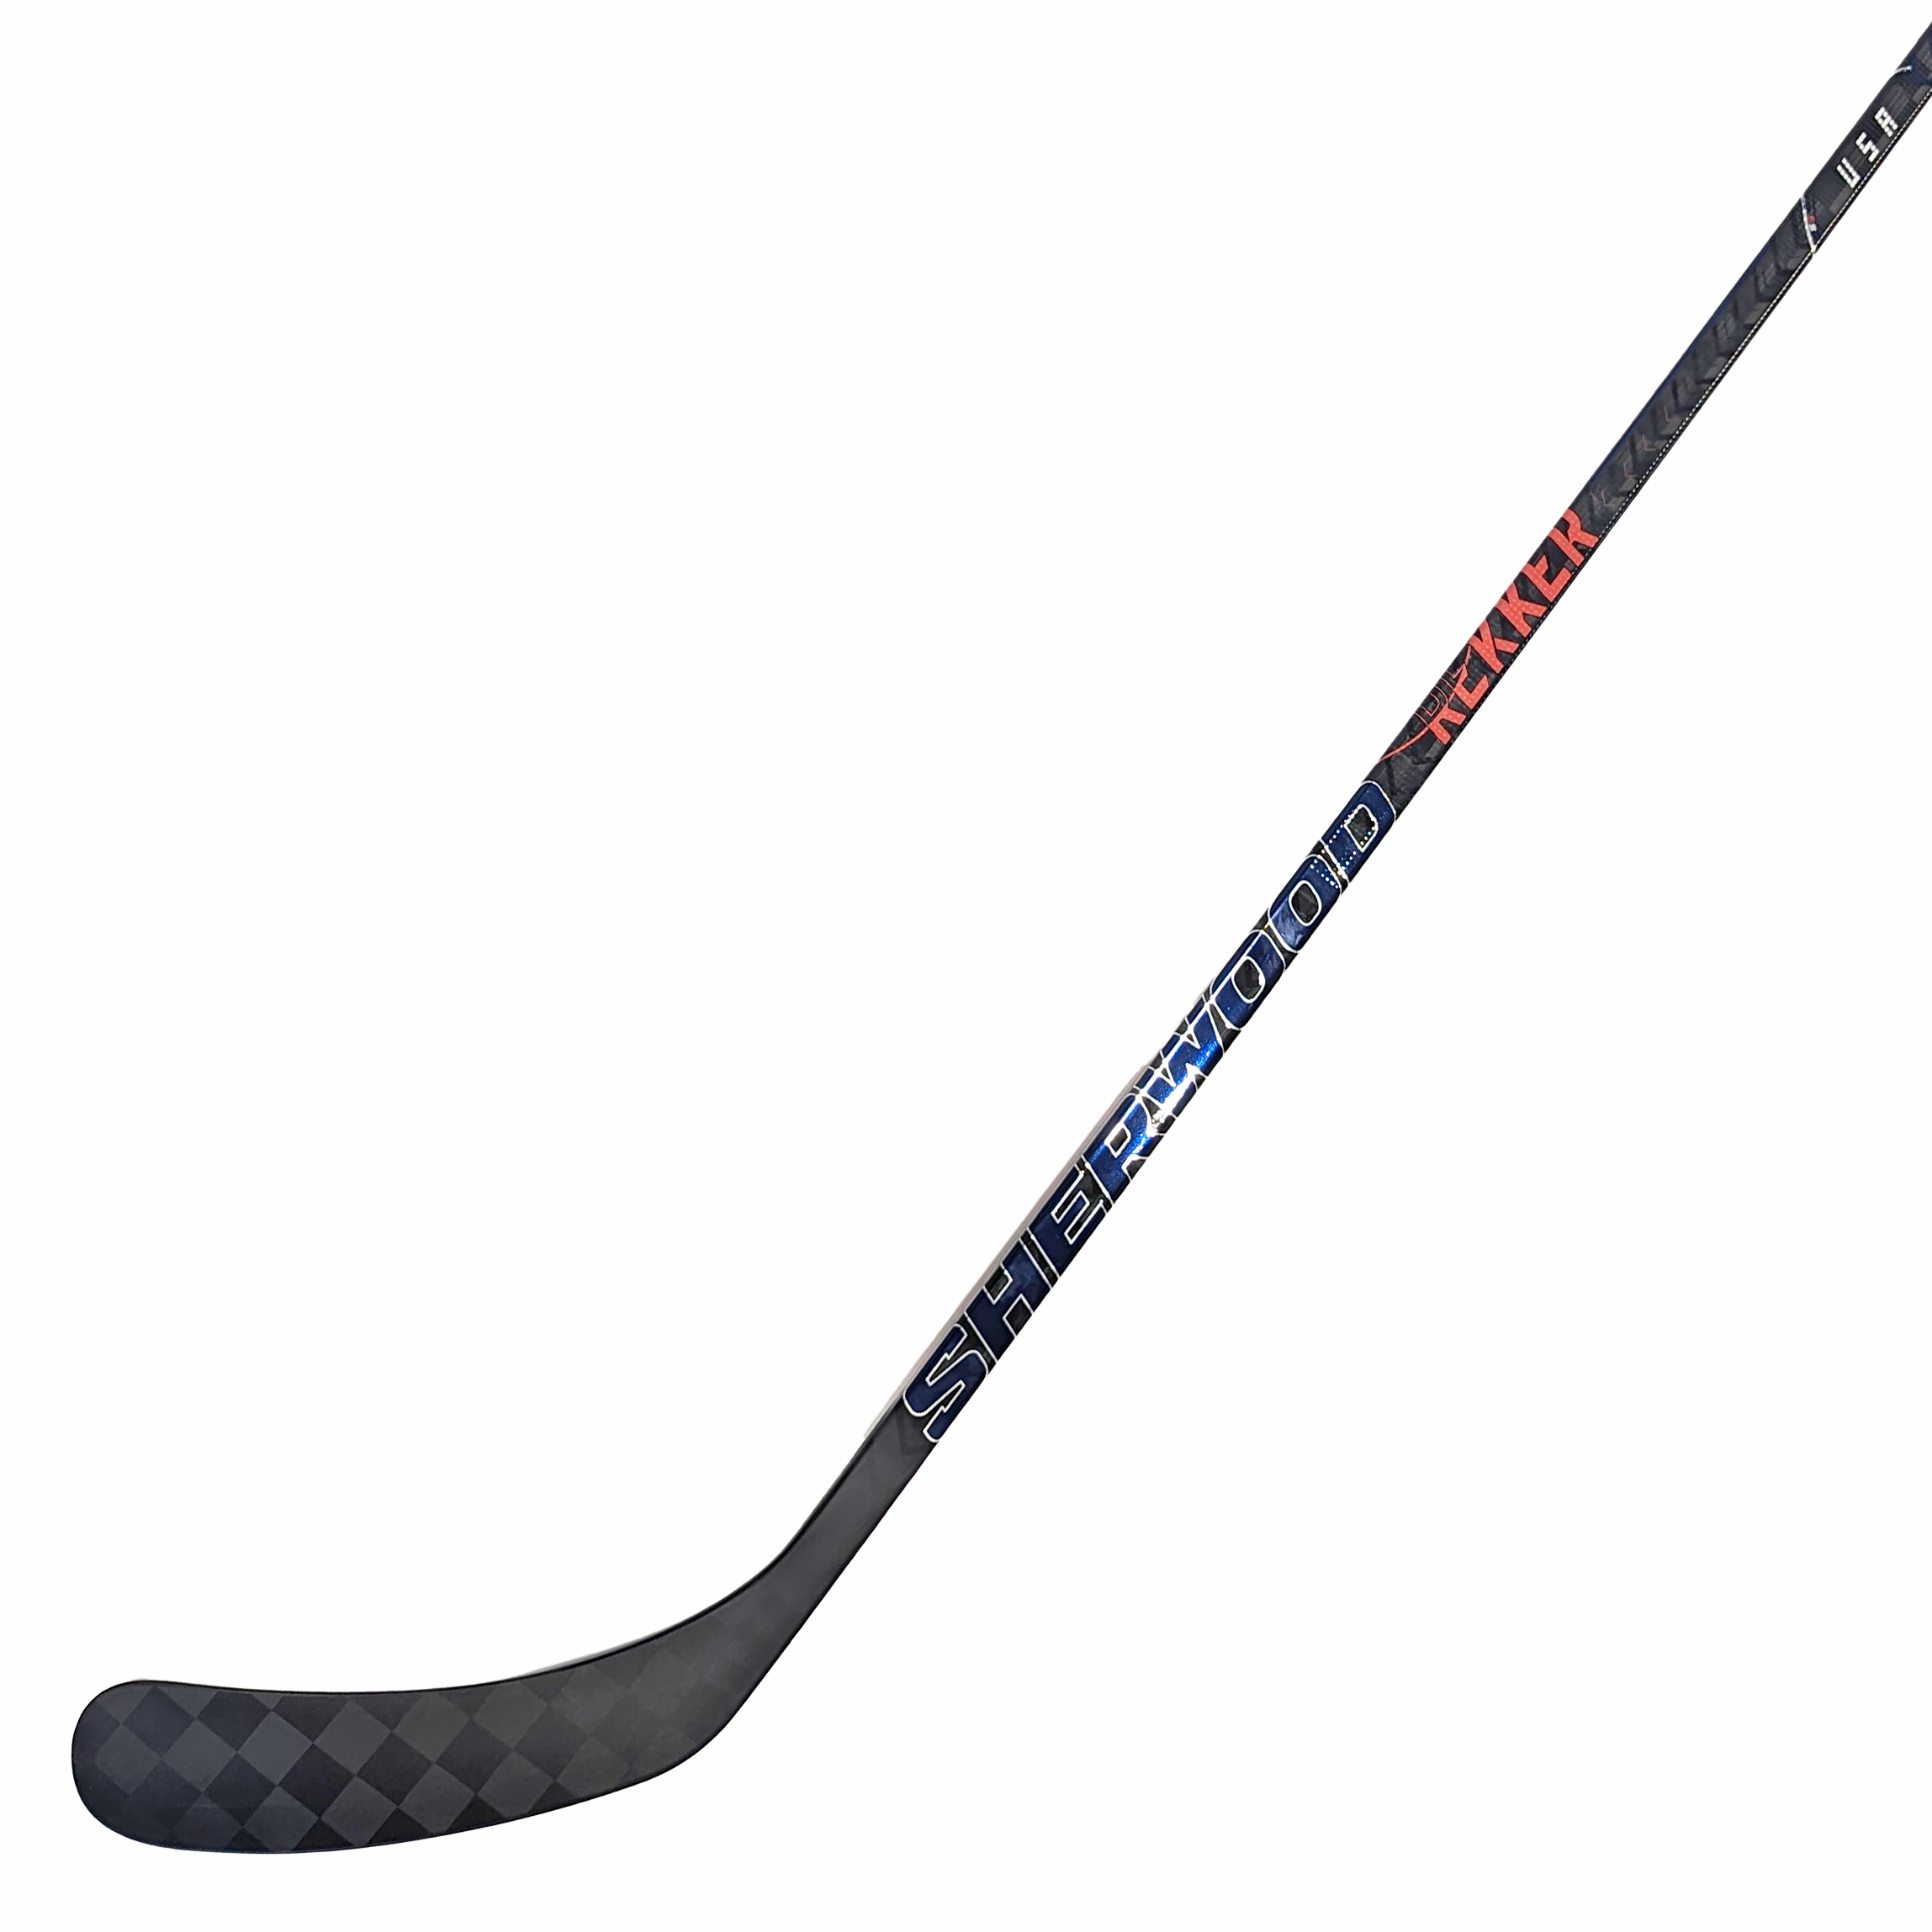 Sher-Wood Rekker Element 1 Senior Hockey Stick